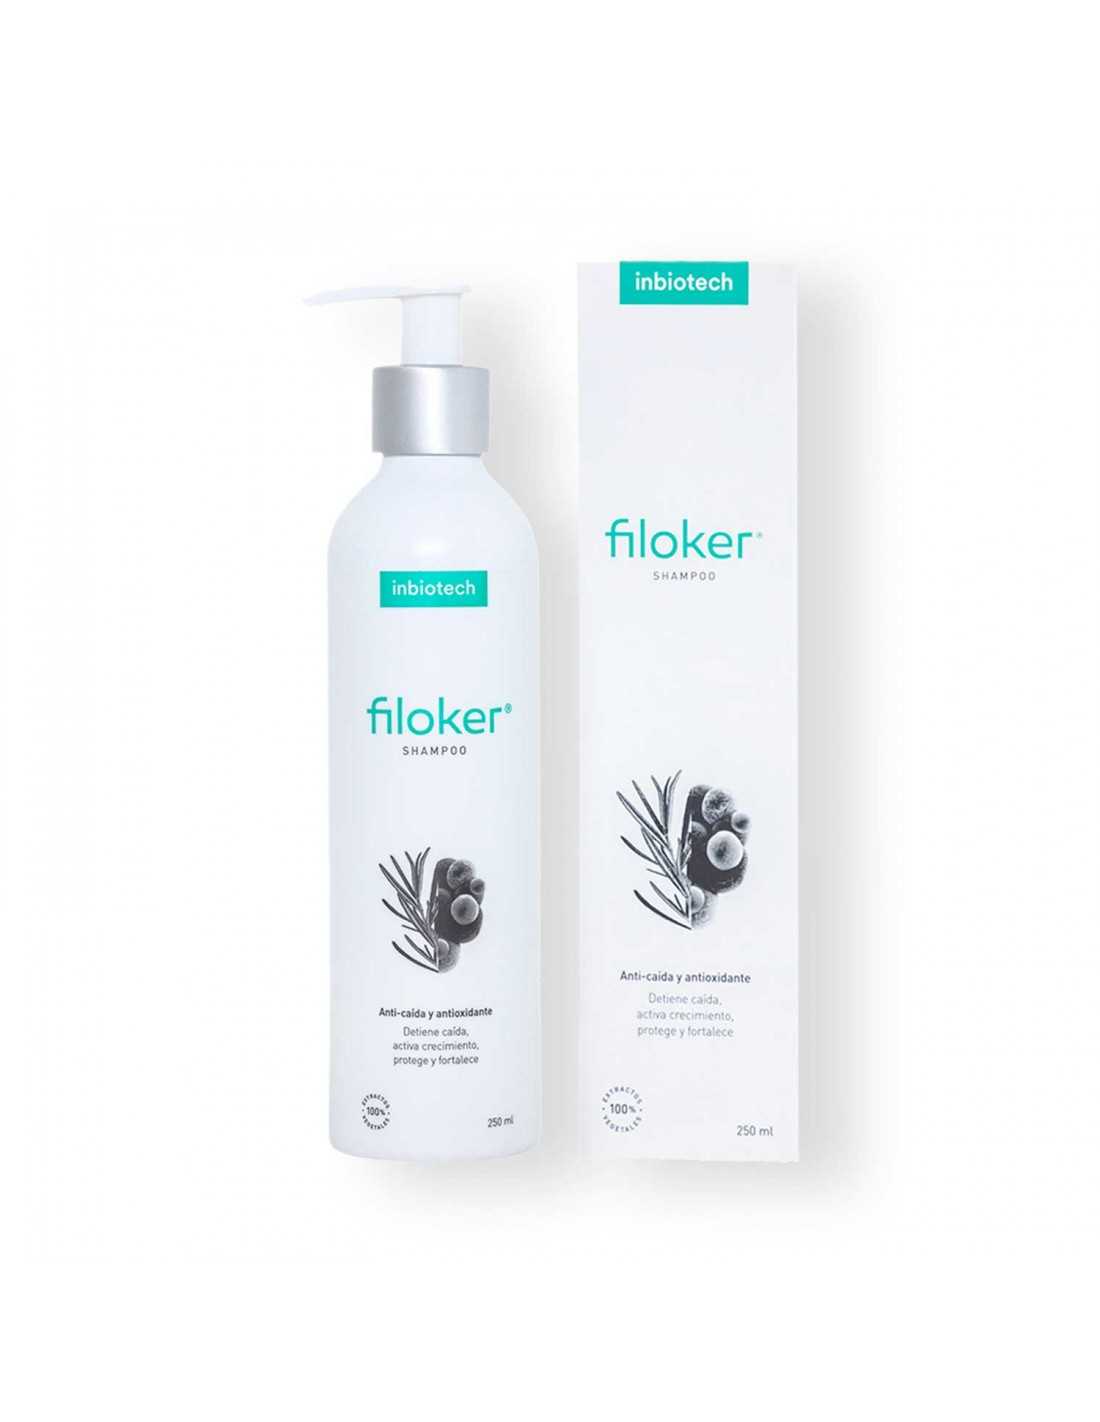 filoker shampoo inbiotech